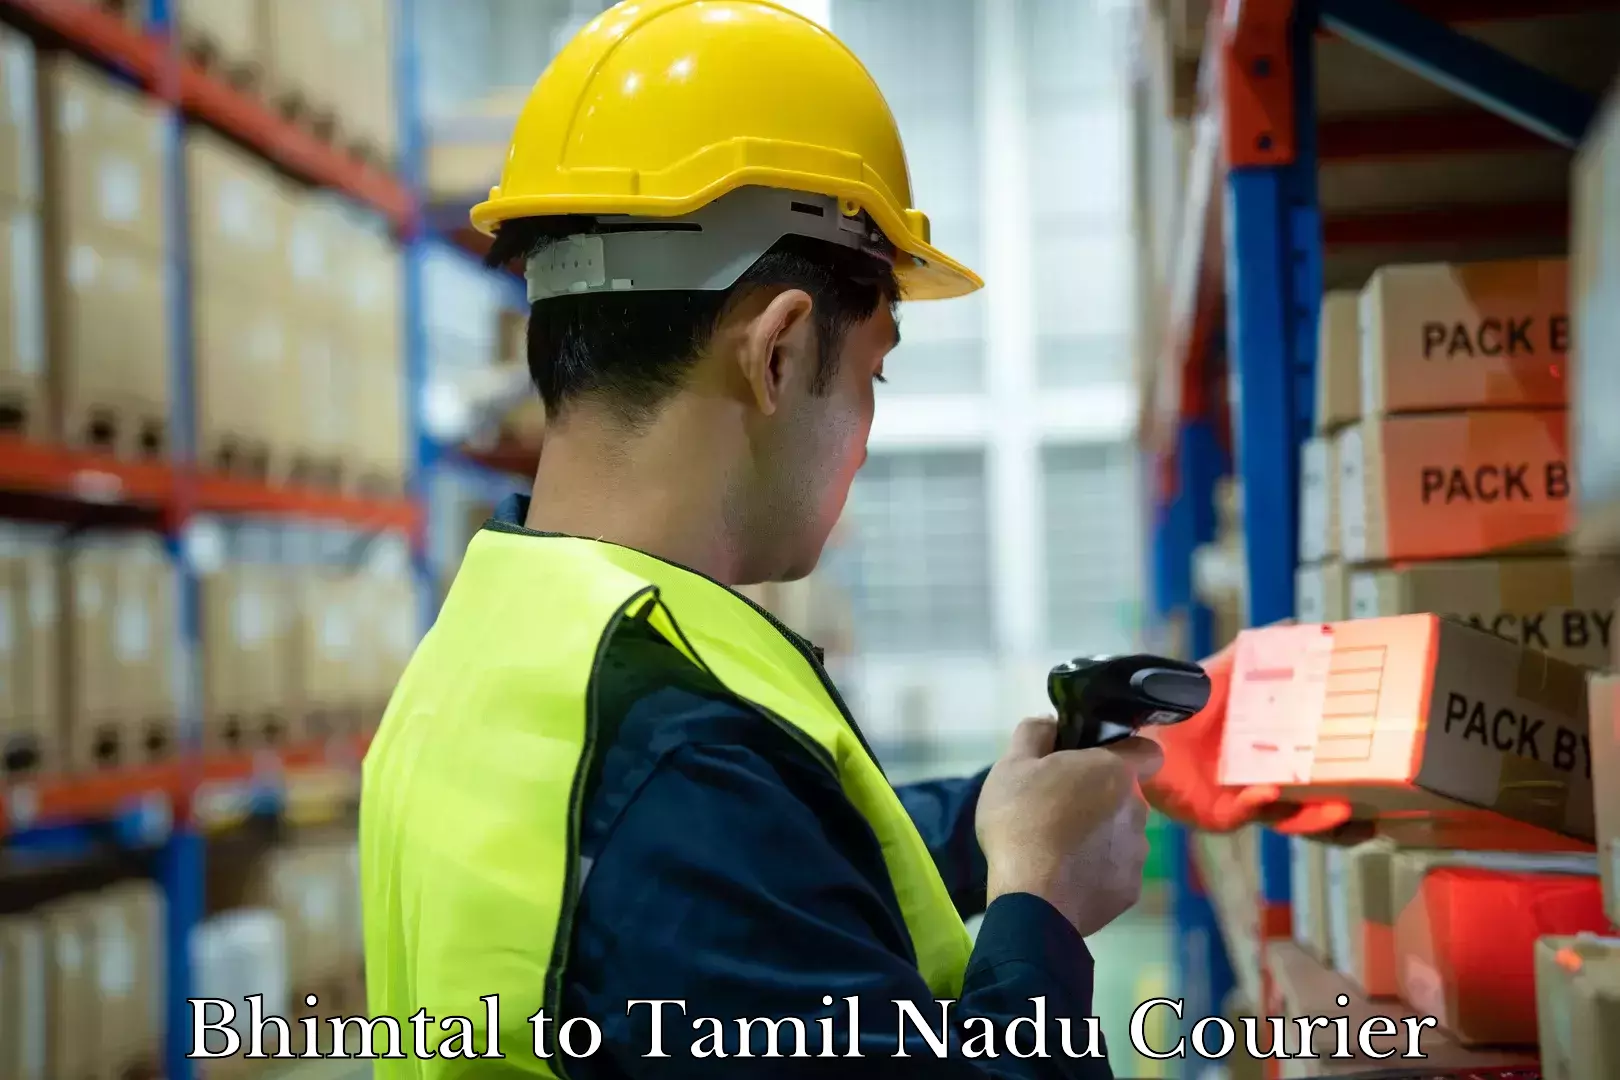 Baggage transport management Bhimtal to Tamil Nadu